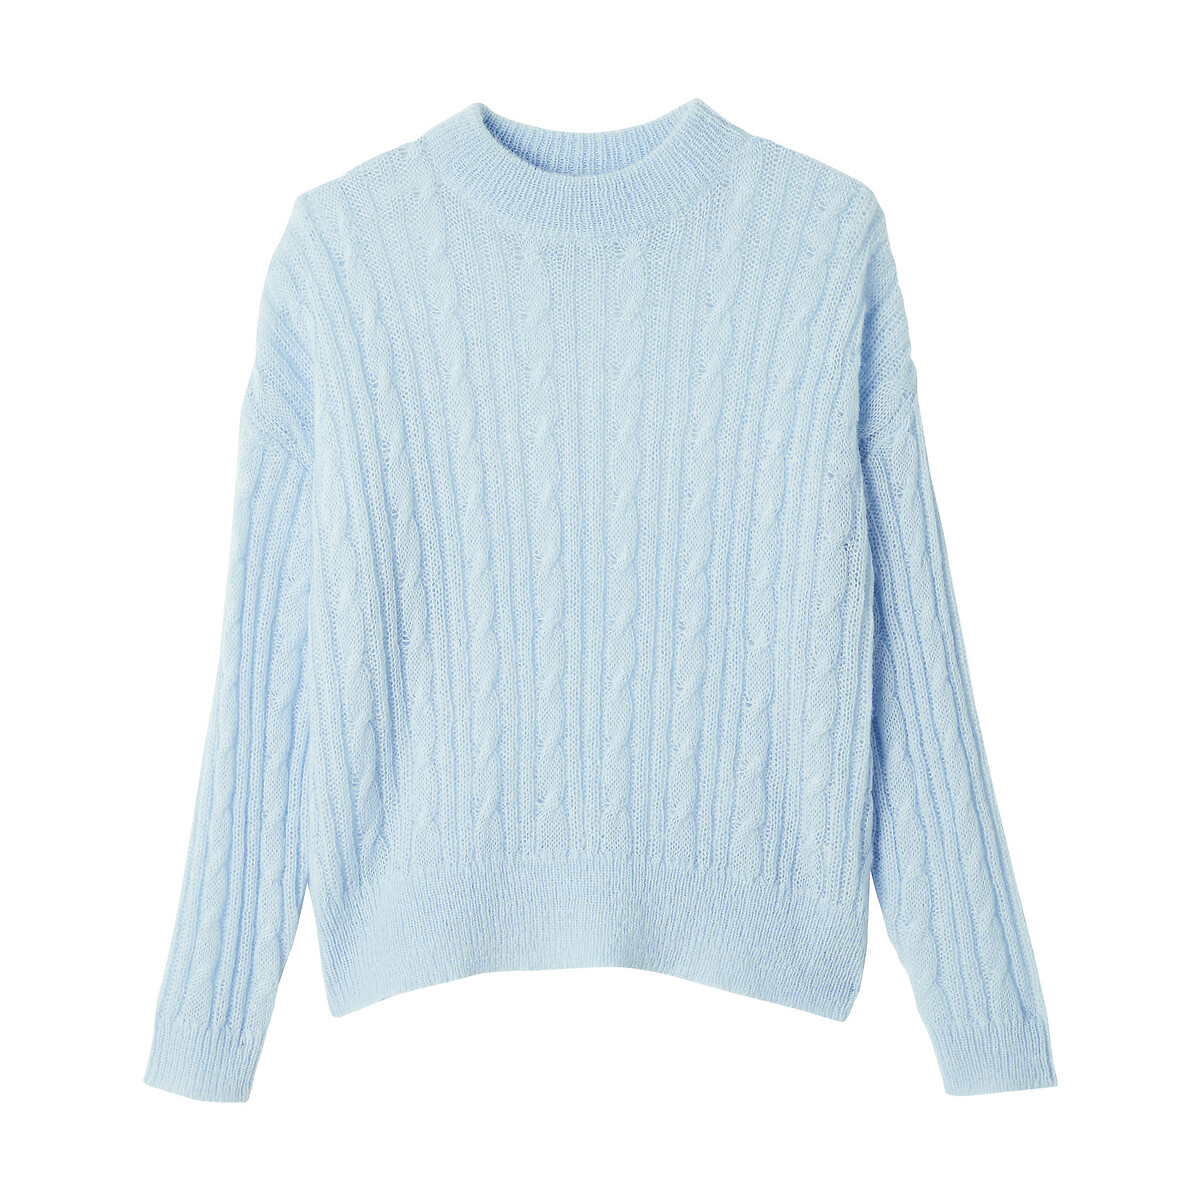 Пуловер La Redoute С круглым вырезом из плотного плетеного трикотажа XL синий, размер XL - фото 5